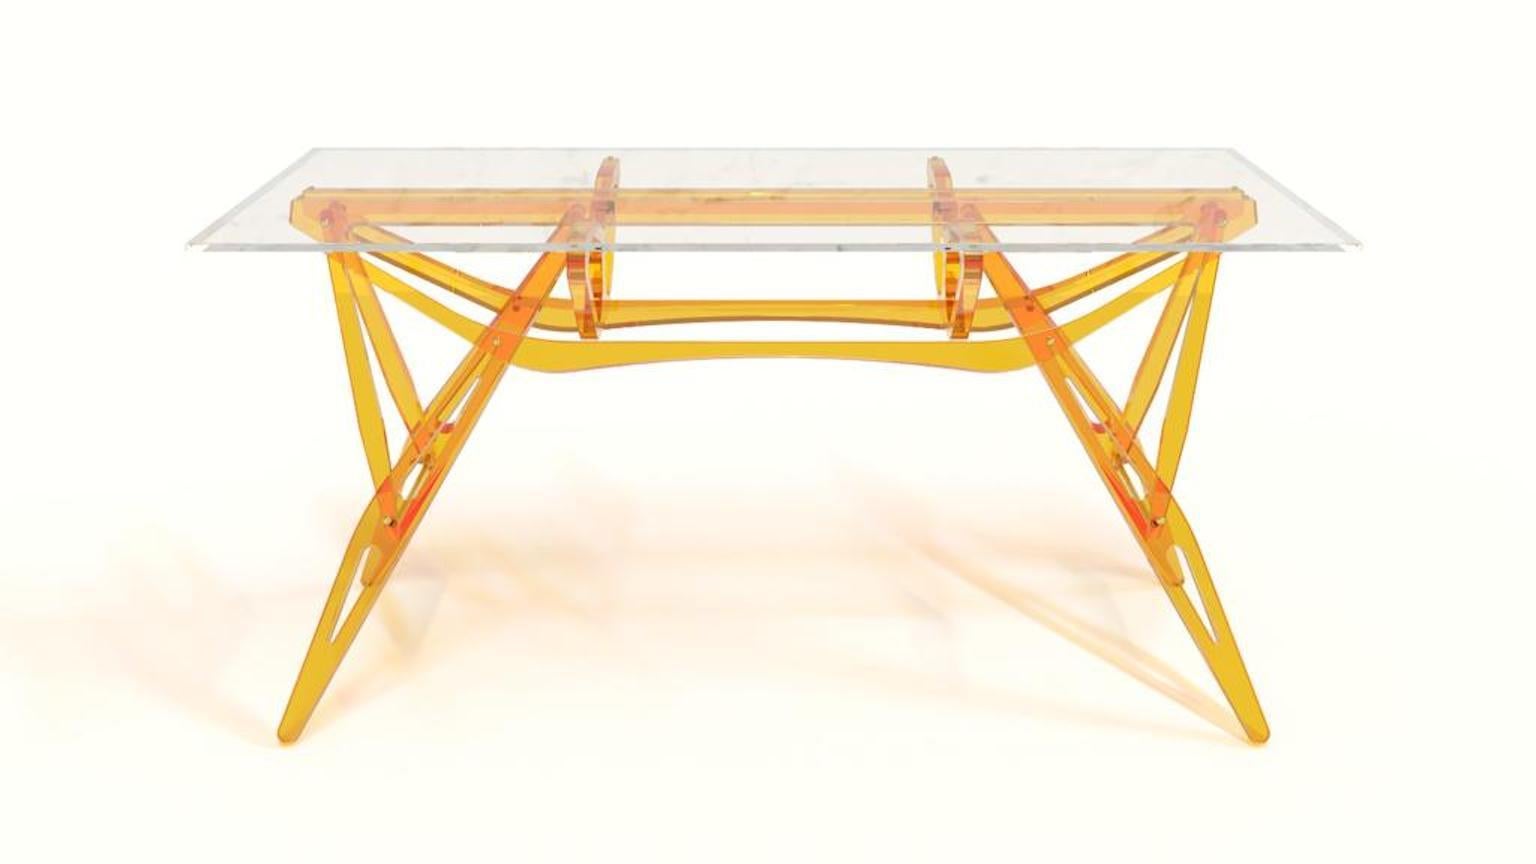 Ir_reale Tisch Hommage an Reale Tisch von Carlo Mollino, 1946 entworfen und produziert von Alchimia im Jahr 2010. Der Tisch hat einen Sockel aus FLOU Plexiglas und eine Kristallplatte. Limitierte Auflage von neun Exemplaren in verschiedenen Farben.